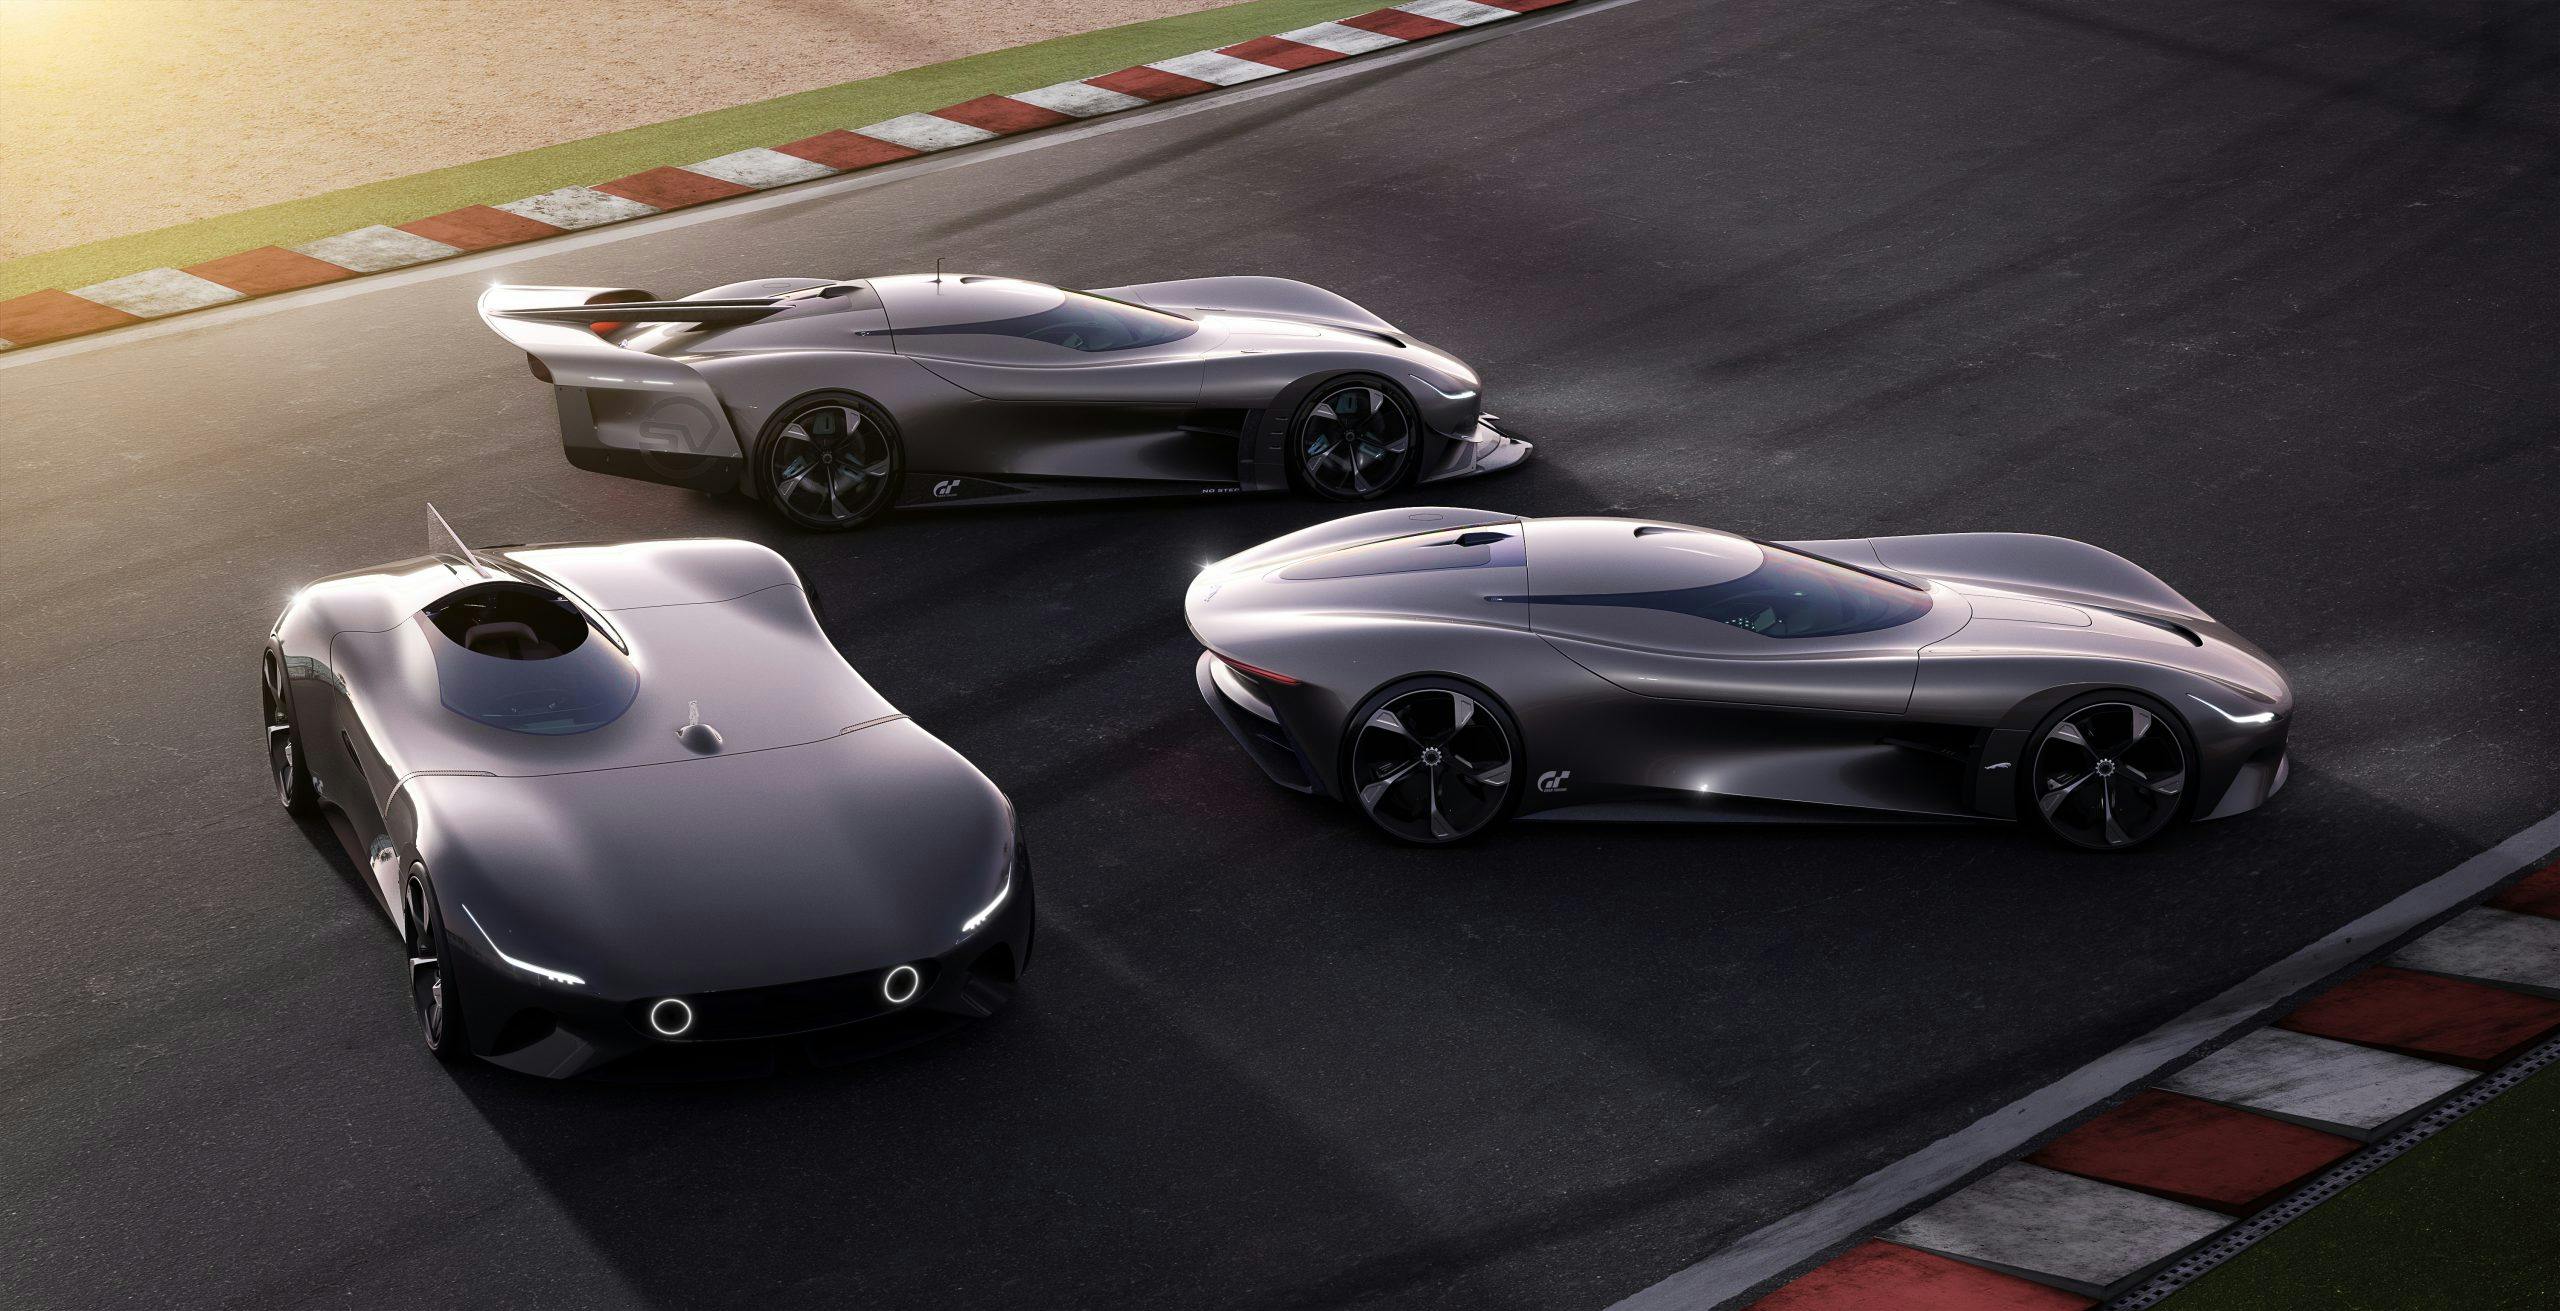 Jaguar Vision Gran Turismo cars